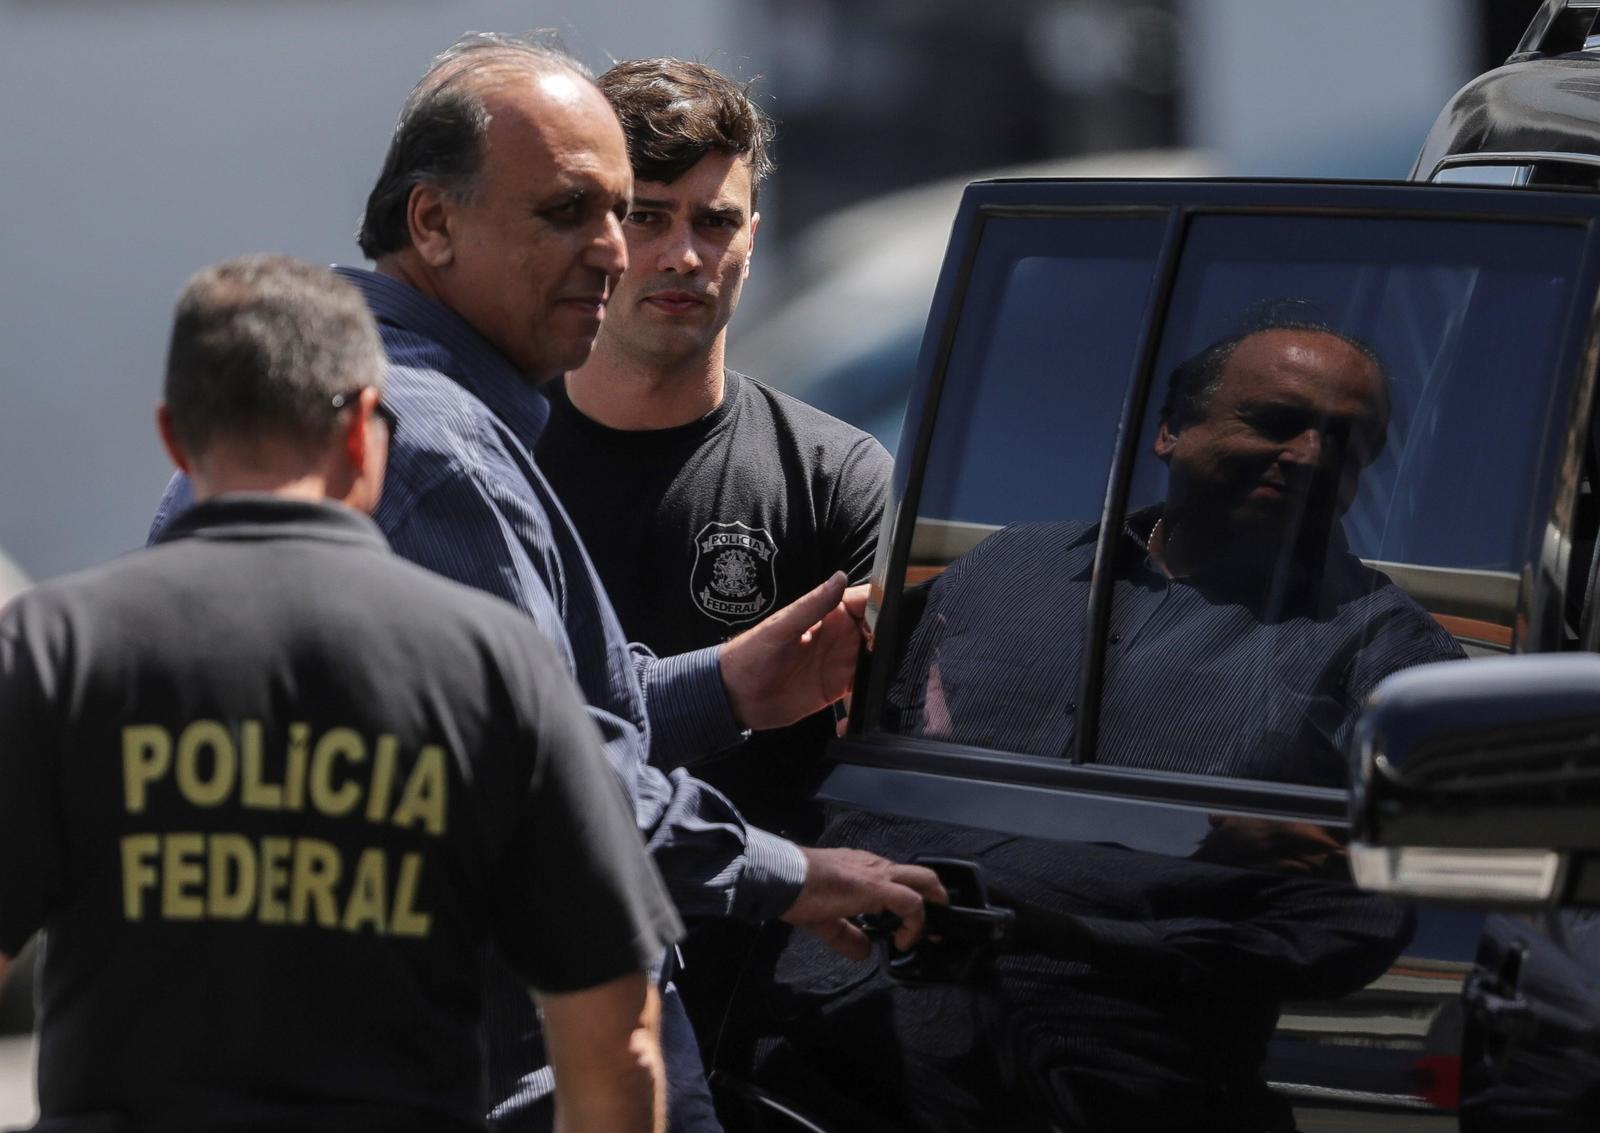 Acusación. El gobernador Luiz Fernando Pezao está acusado de delitos de corrupción practicados desde 2007. (EFE)